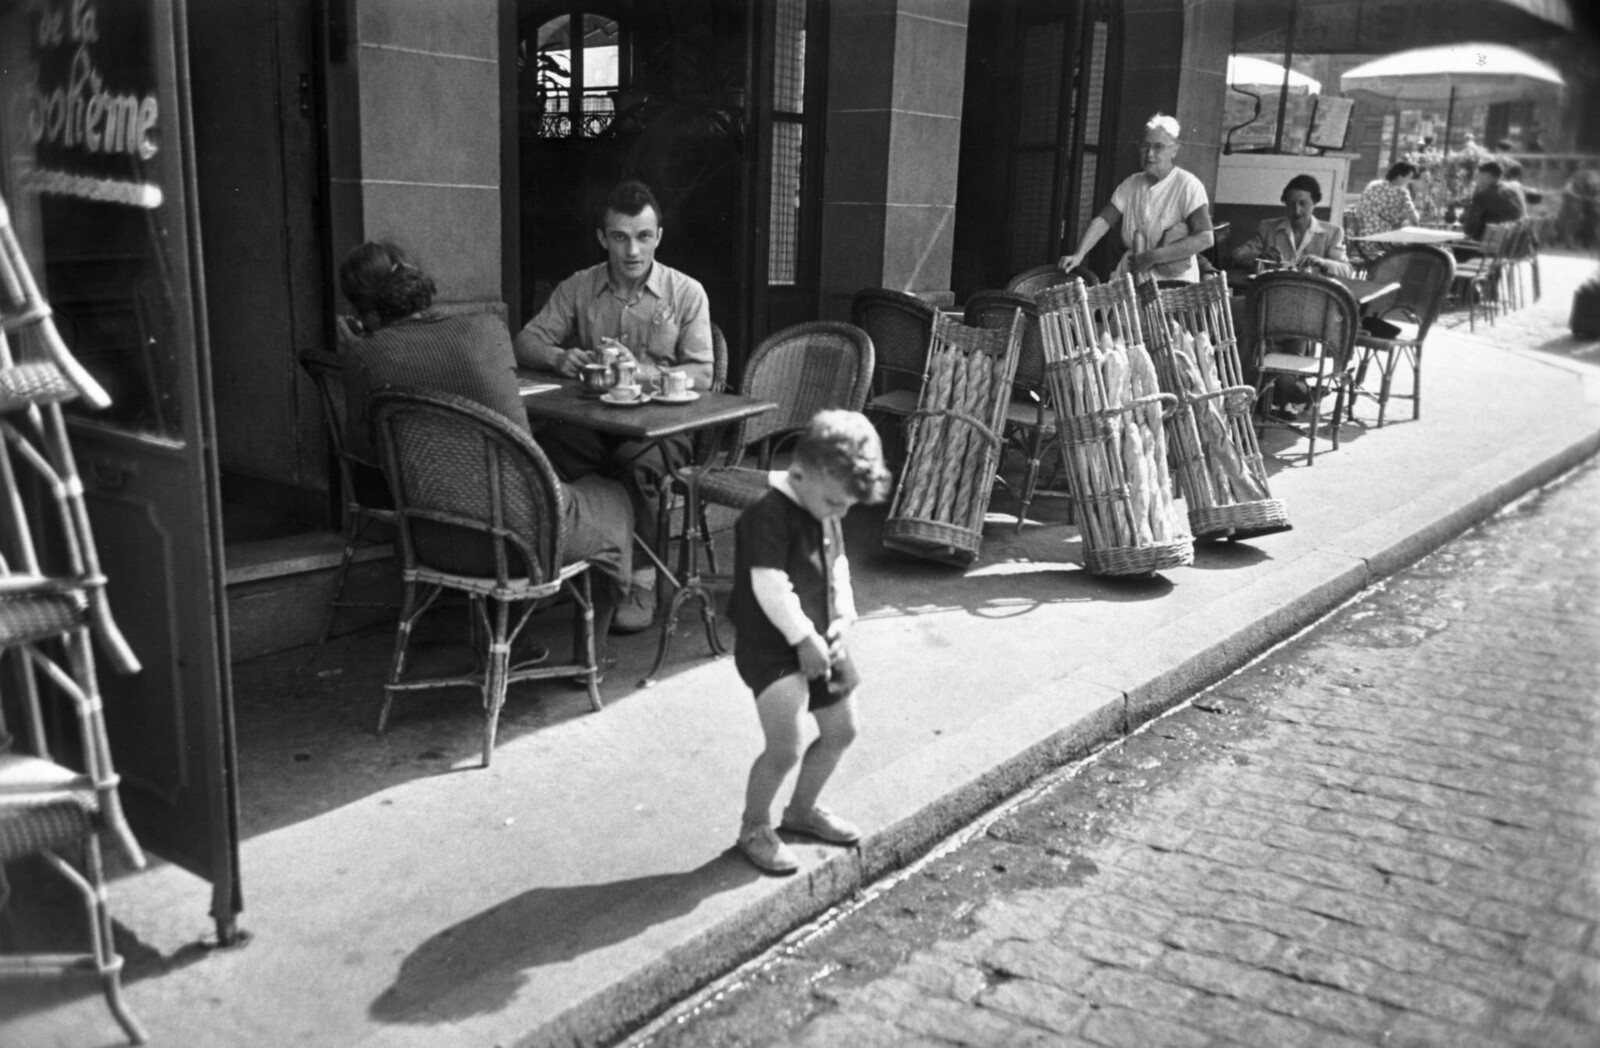 1950. Мальчик на Монмартре пользуется водостоком возле кафе, чтобы справить нужду